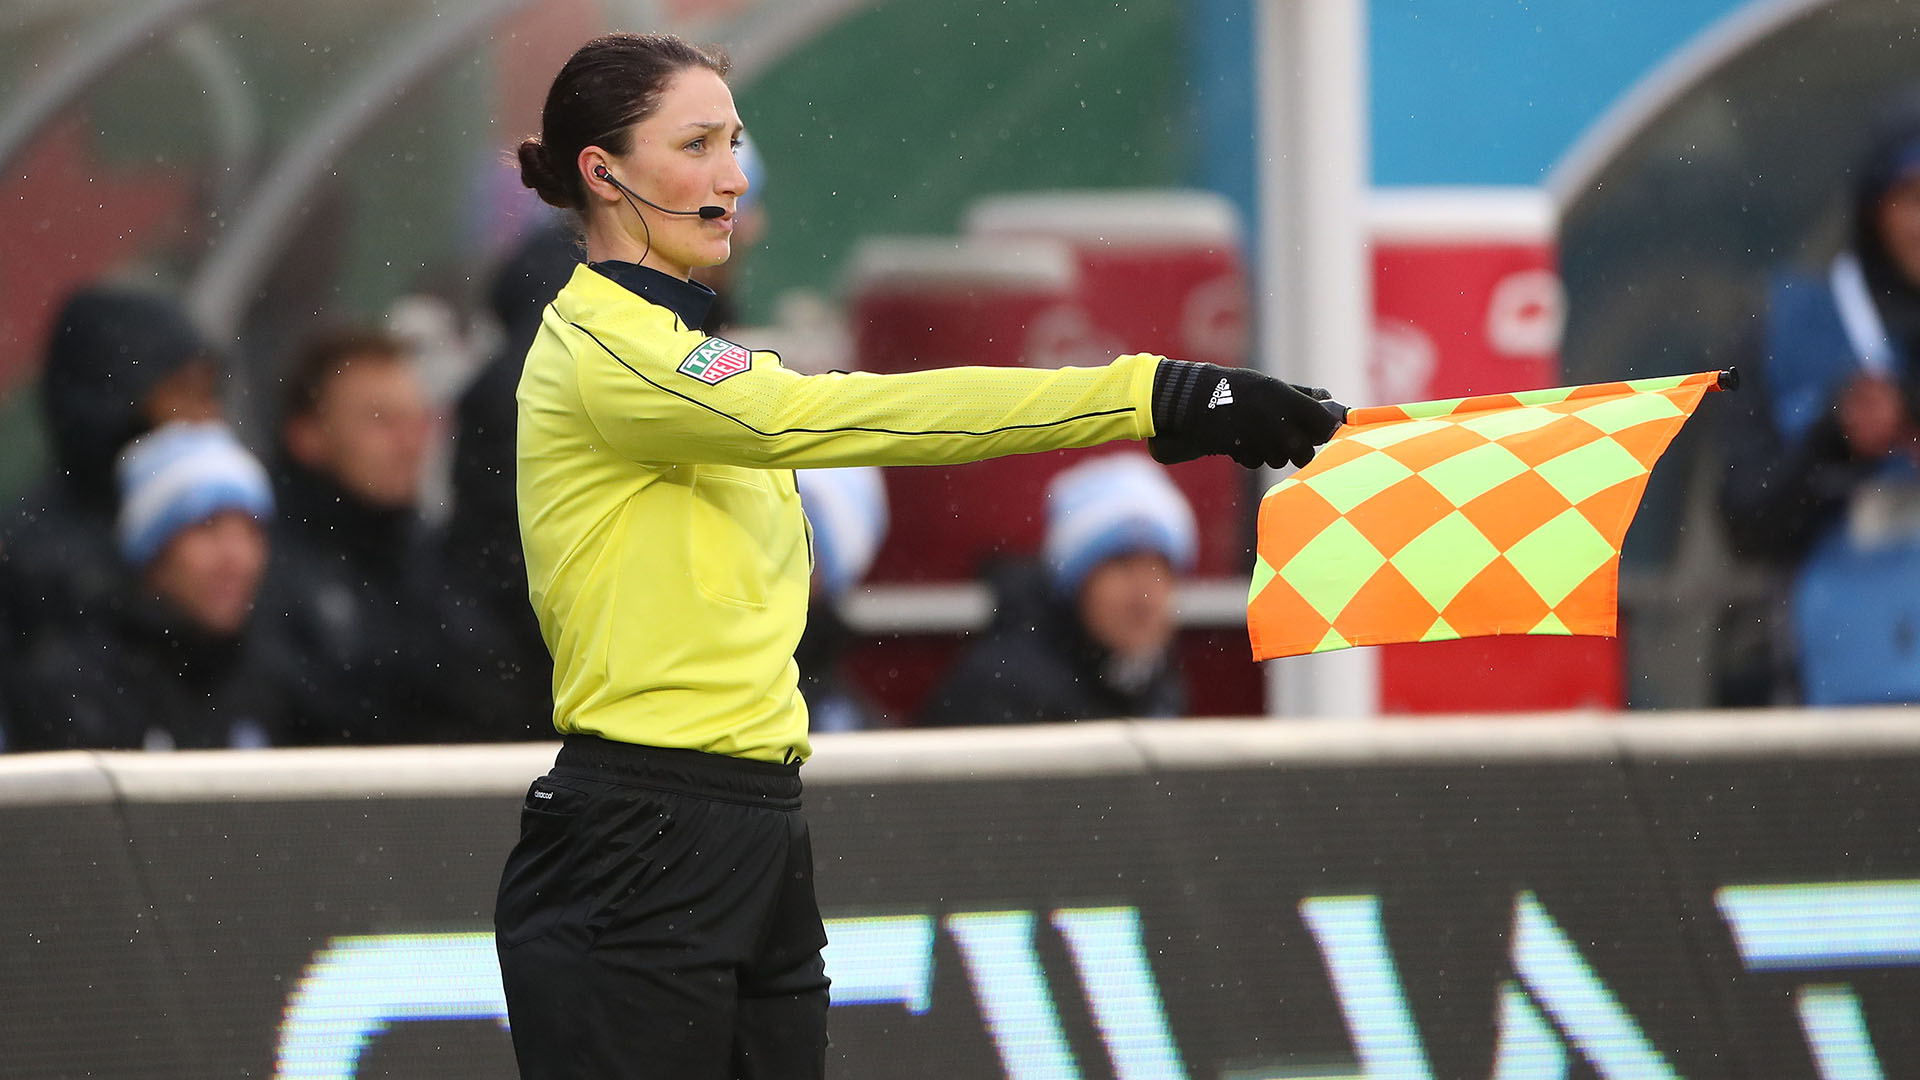 La estadounidense Kathryn Nesbitt en acción durante un partido de la MLS, en Nueva York. Es probable que en el Mundial sea cuarta árbitra